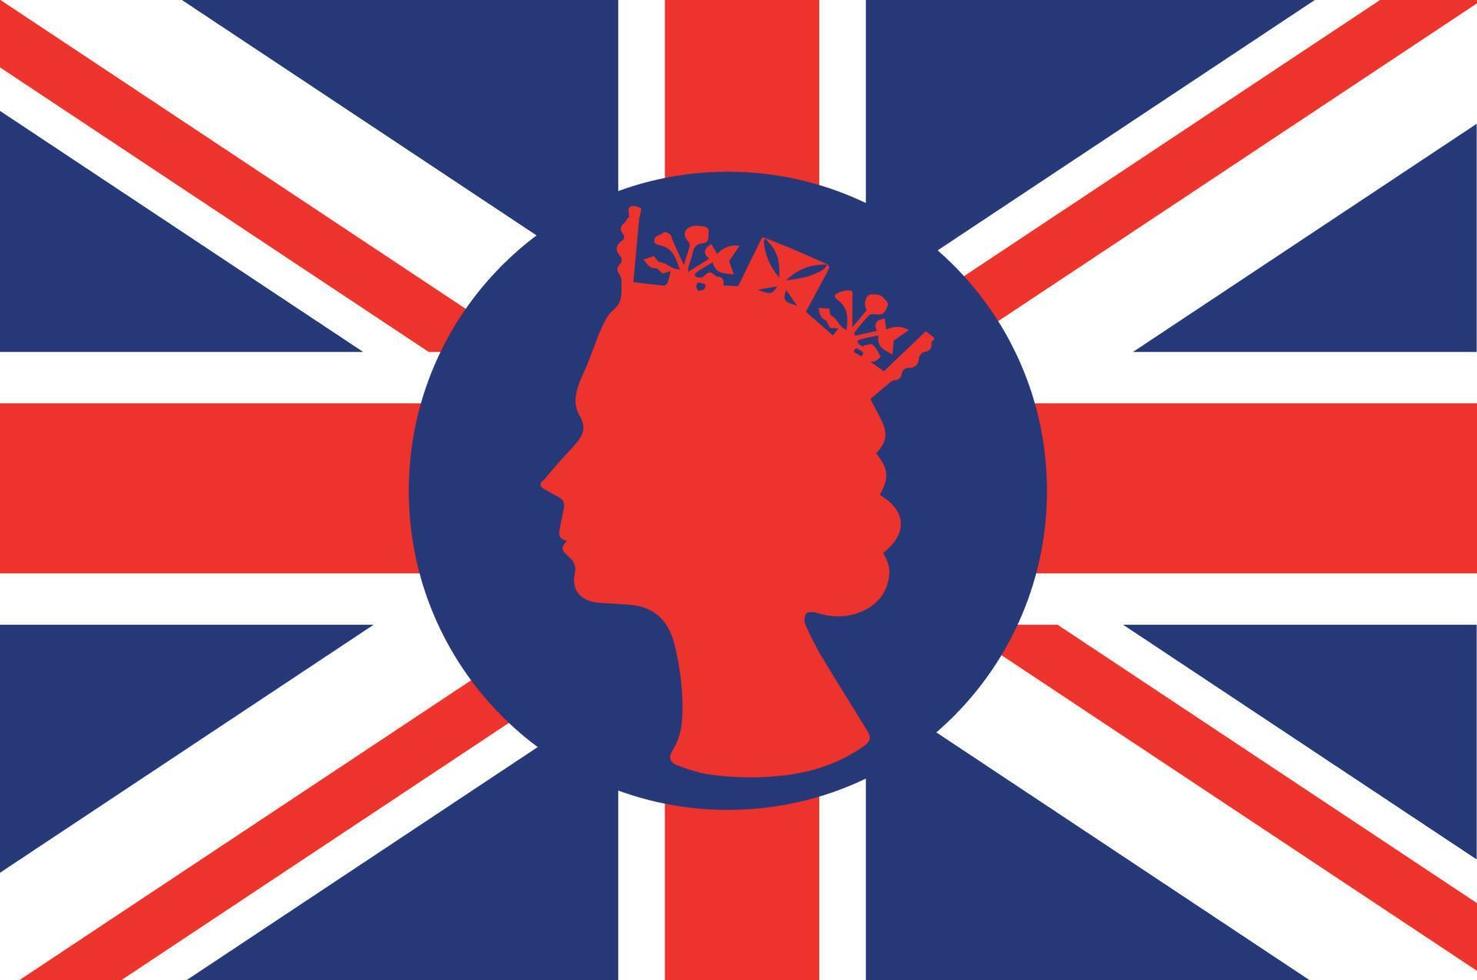 elizabeth rainha rosto vermelho com a bandeira britânica do reino unido nacional europa emblema ícone ilustração vetorial elemento de design abstrato vetor